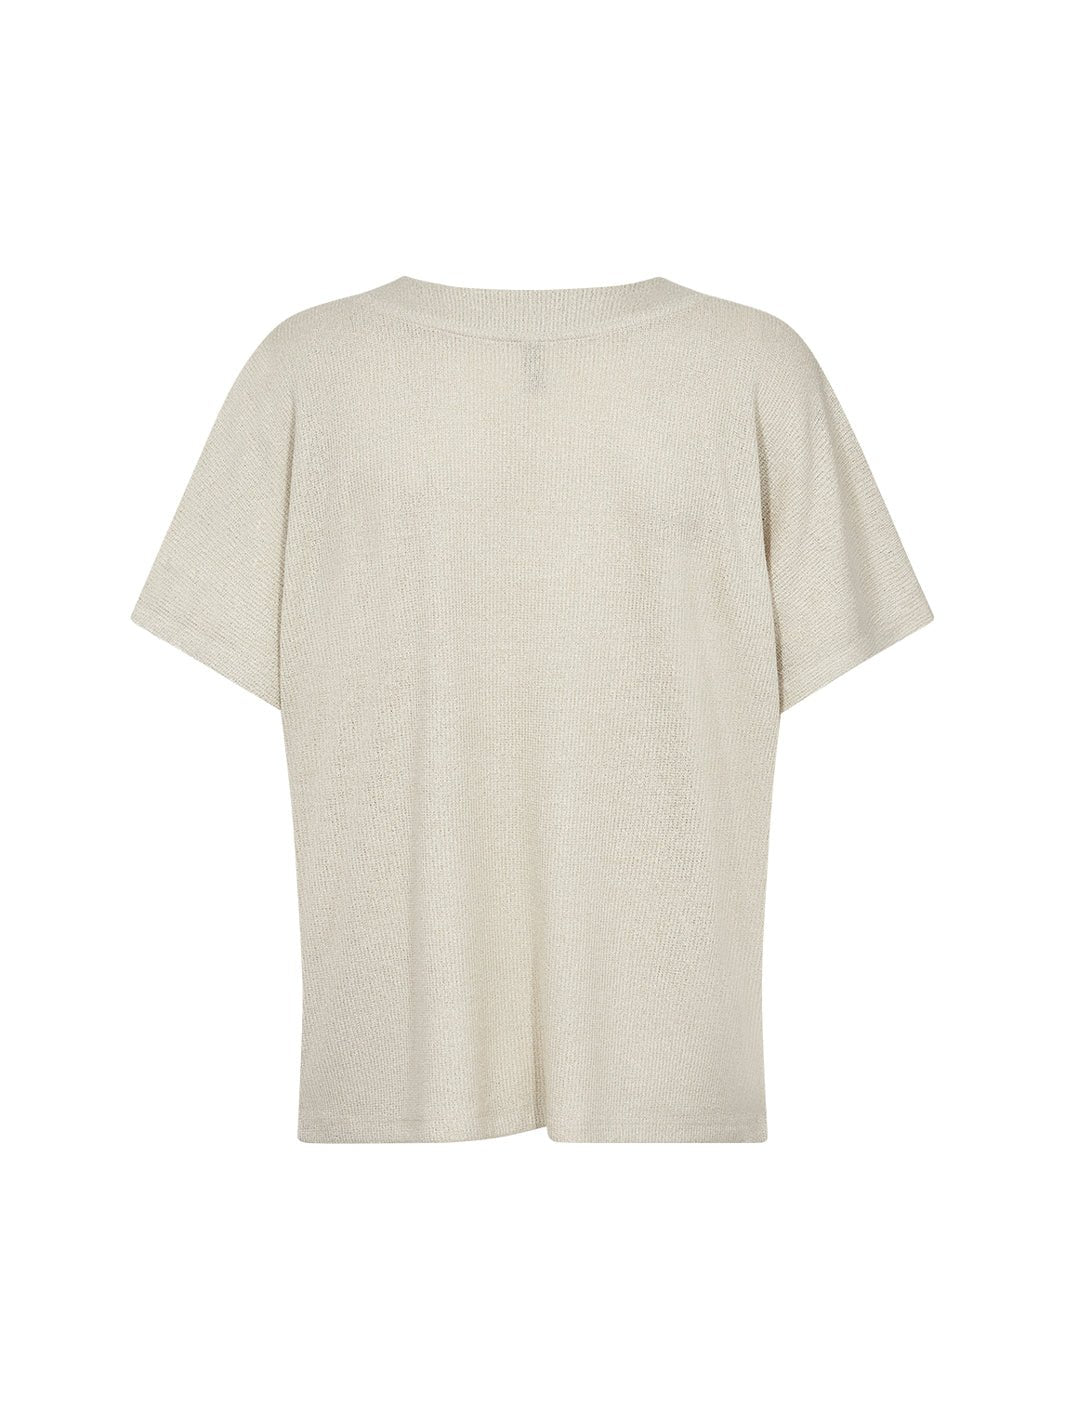 Soya Concept Delia 1 t-shirt creme - Online-Mode